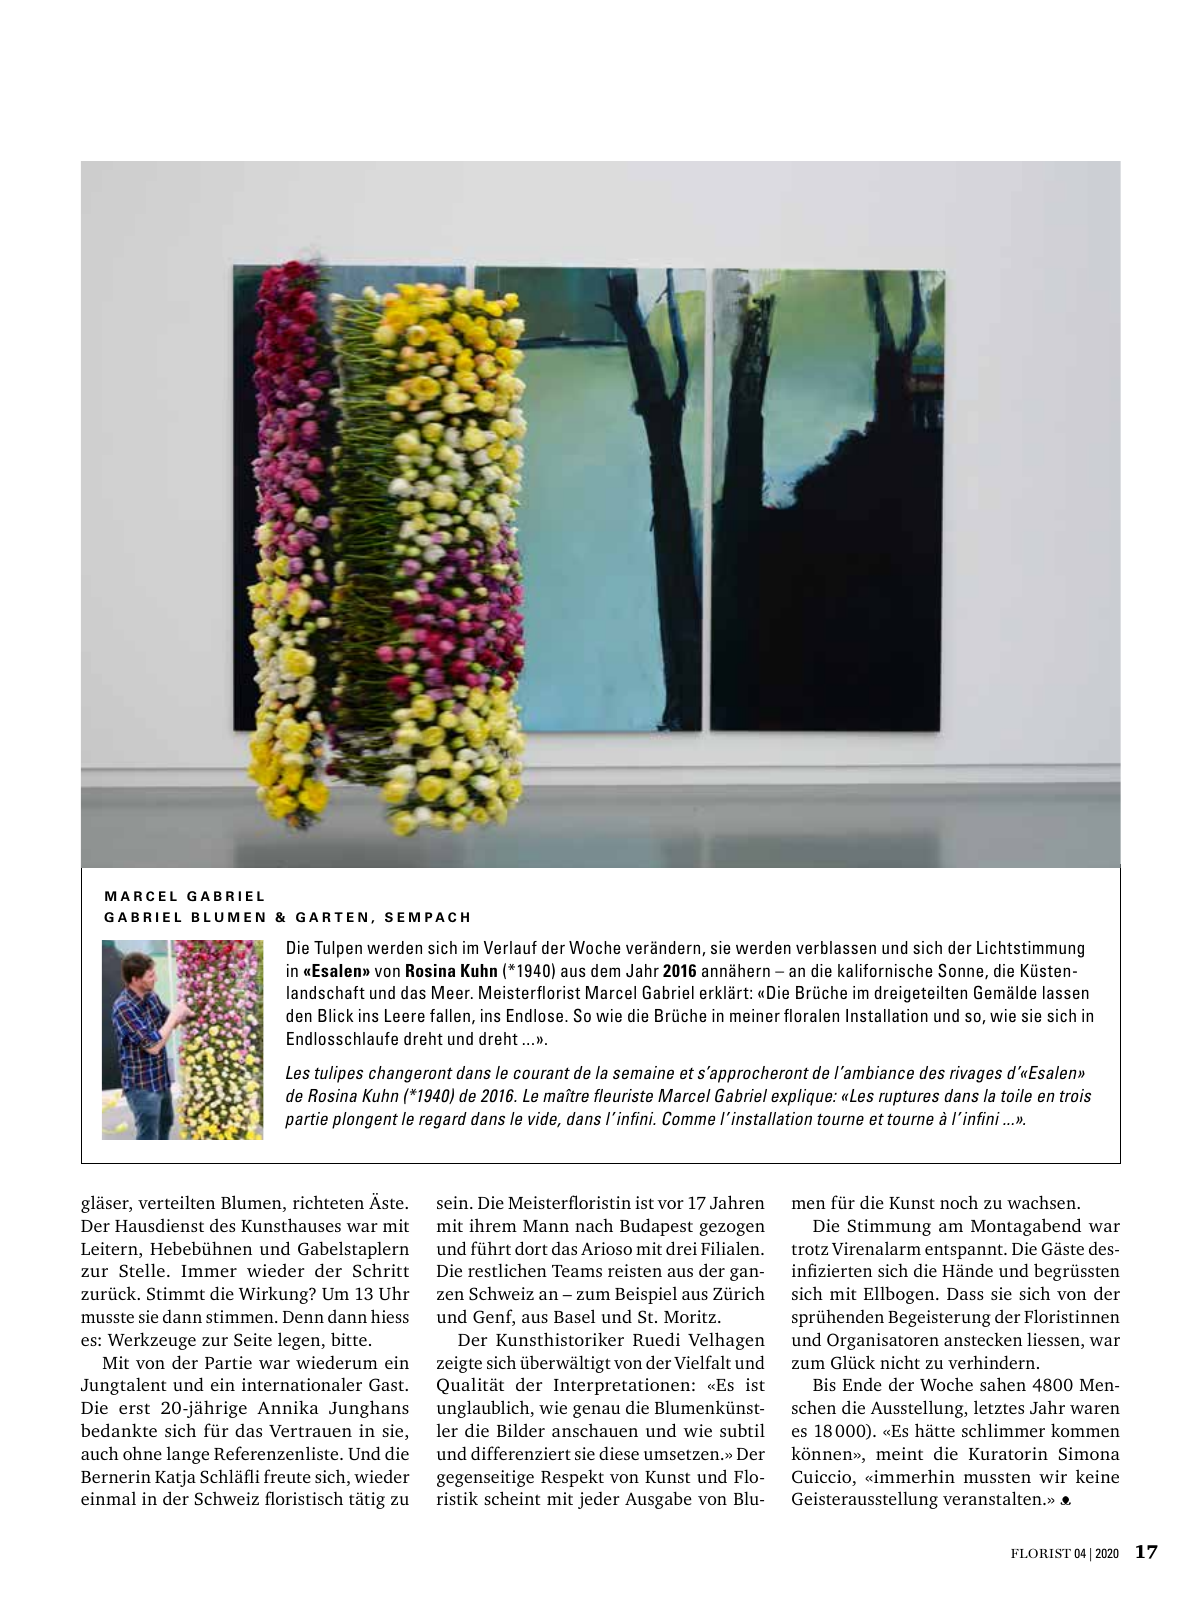 Vorschau Florist - Ausgabe April 2020 Seite 15